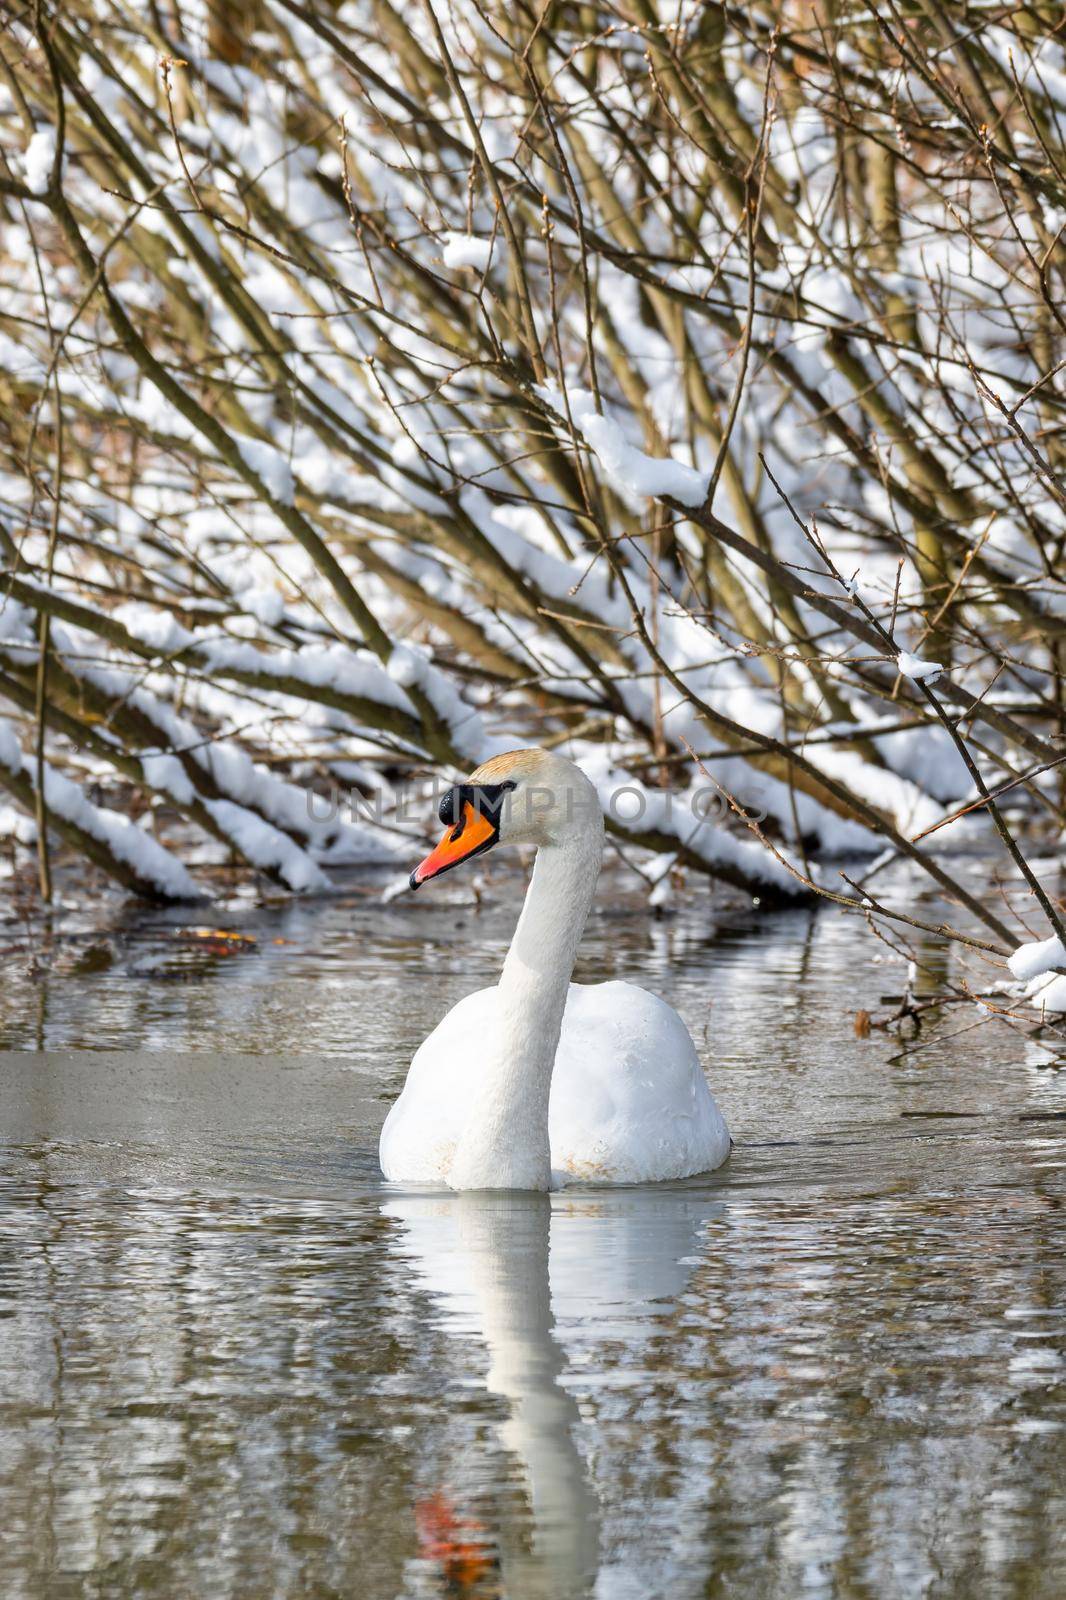 Wild bird mute swan in winter on pond by artush